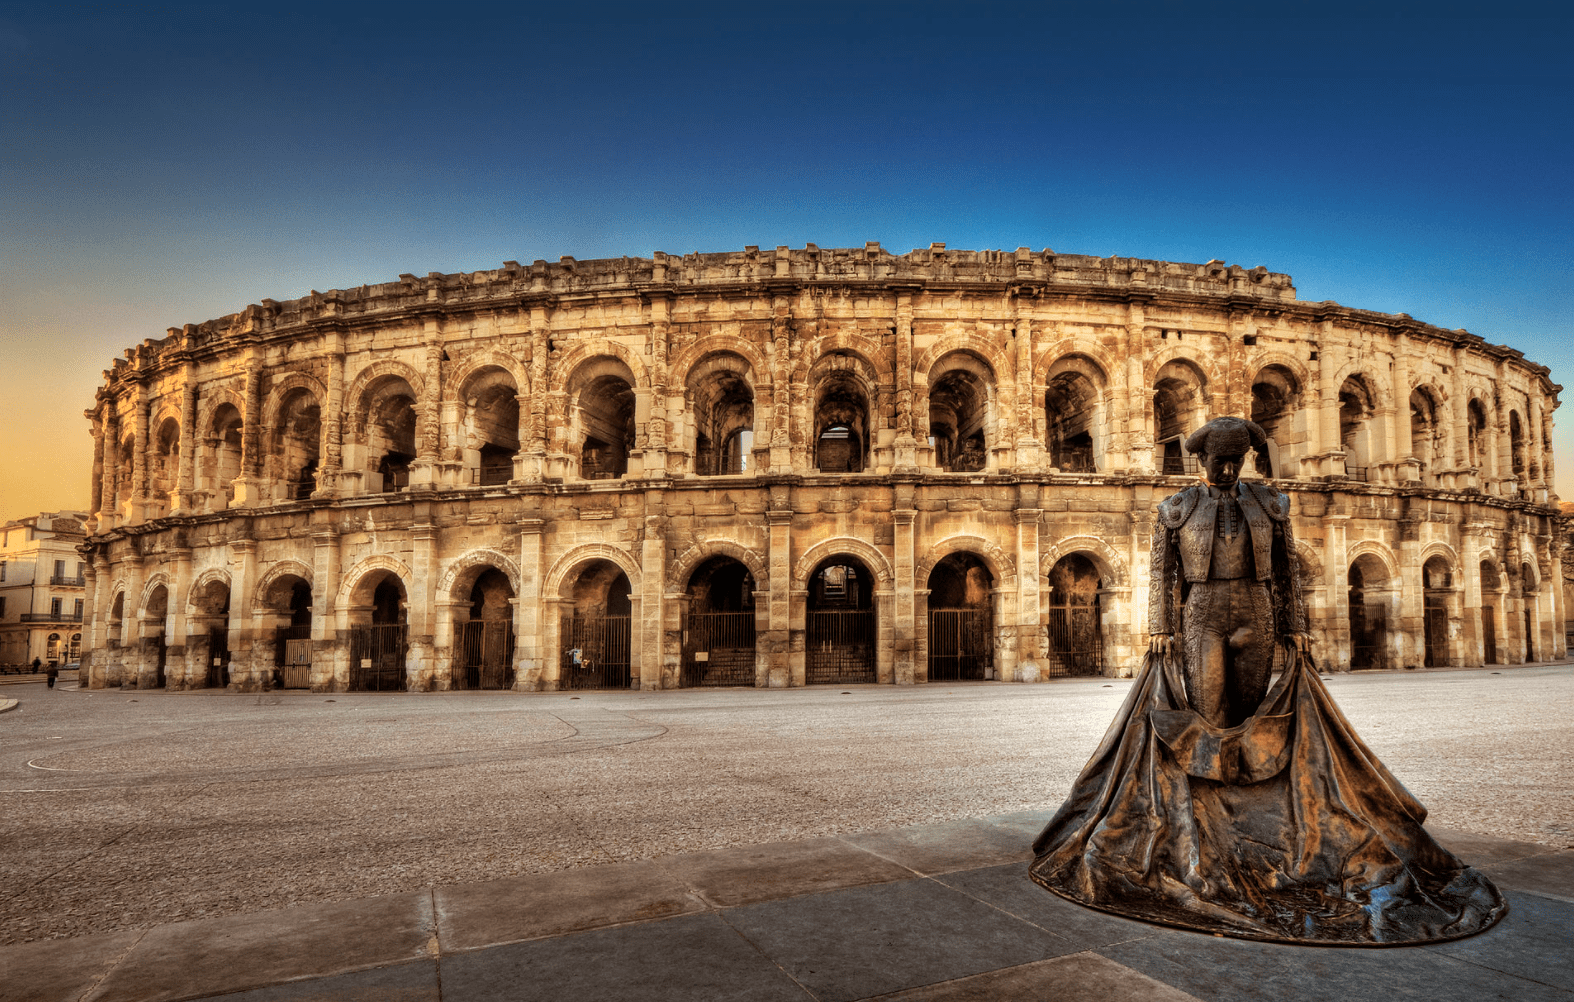 Les arènes de Nîmes : l'un des amphithéâtres romains les mieux conservés